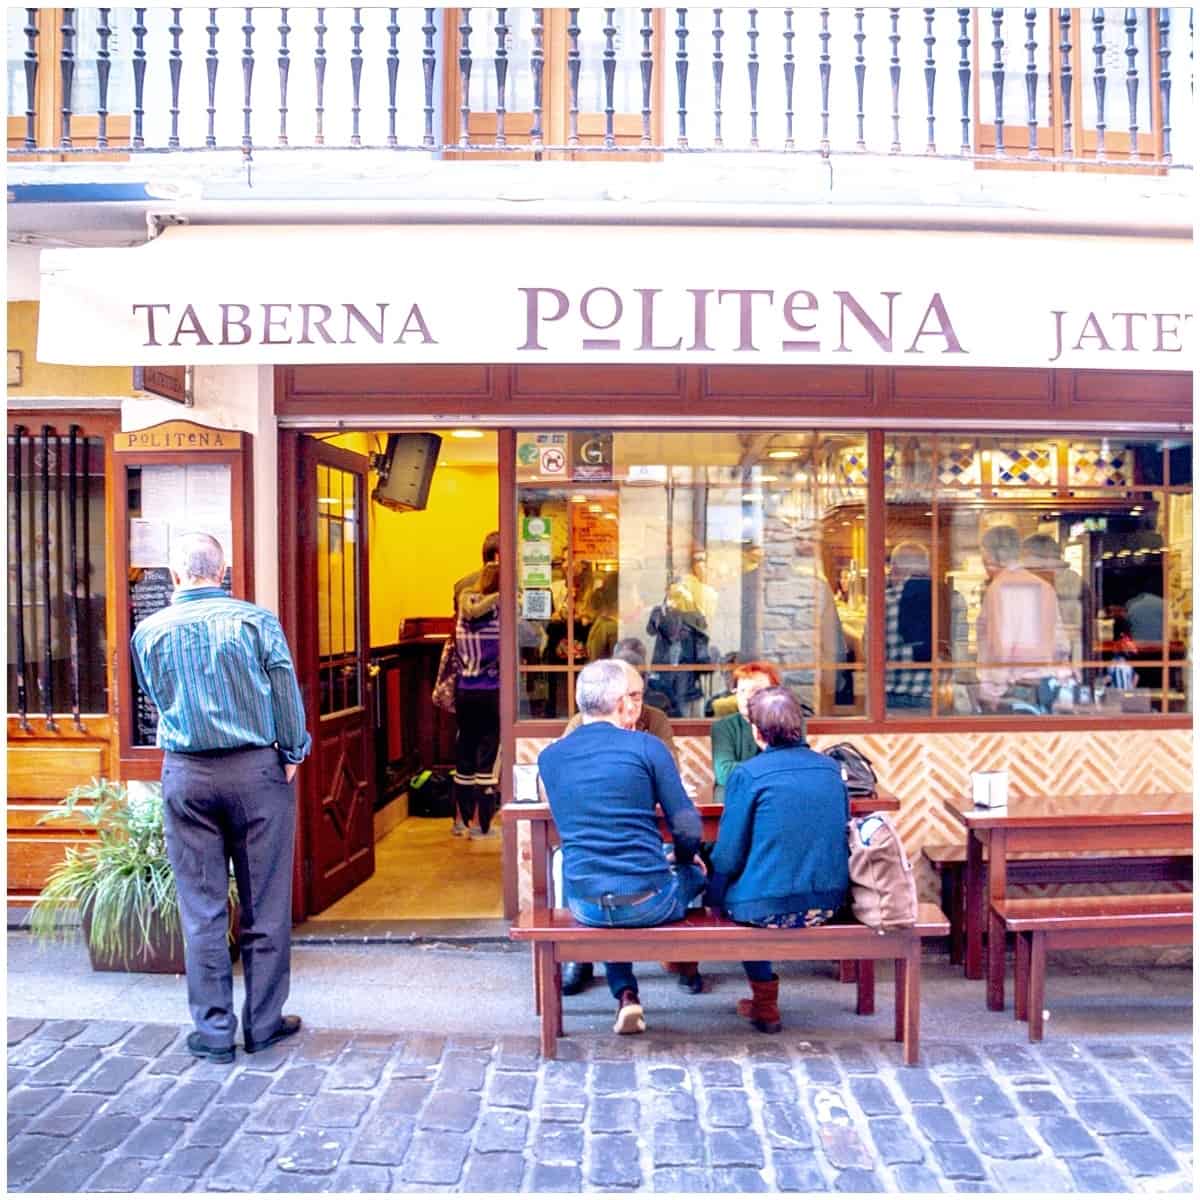 Taberna politena square image in Donostia San Sebastian